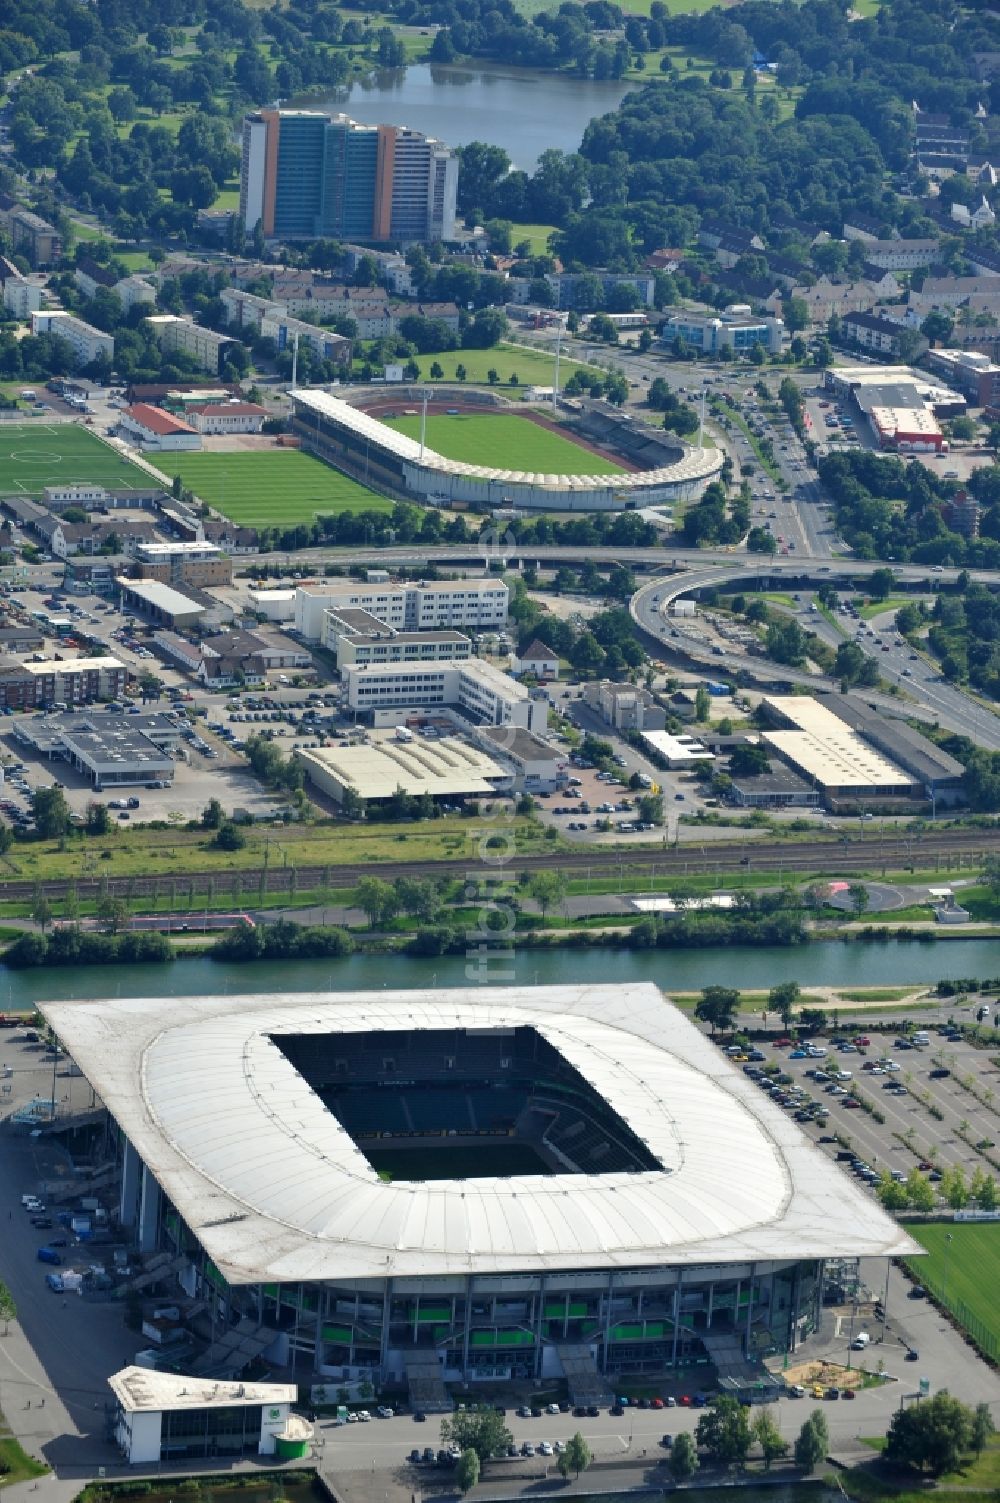 Luftbild Wolfsburg Volkswagen Arena / Stadion Wolfsburg